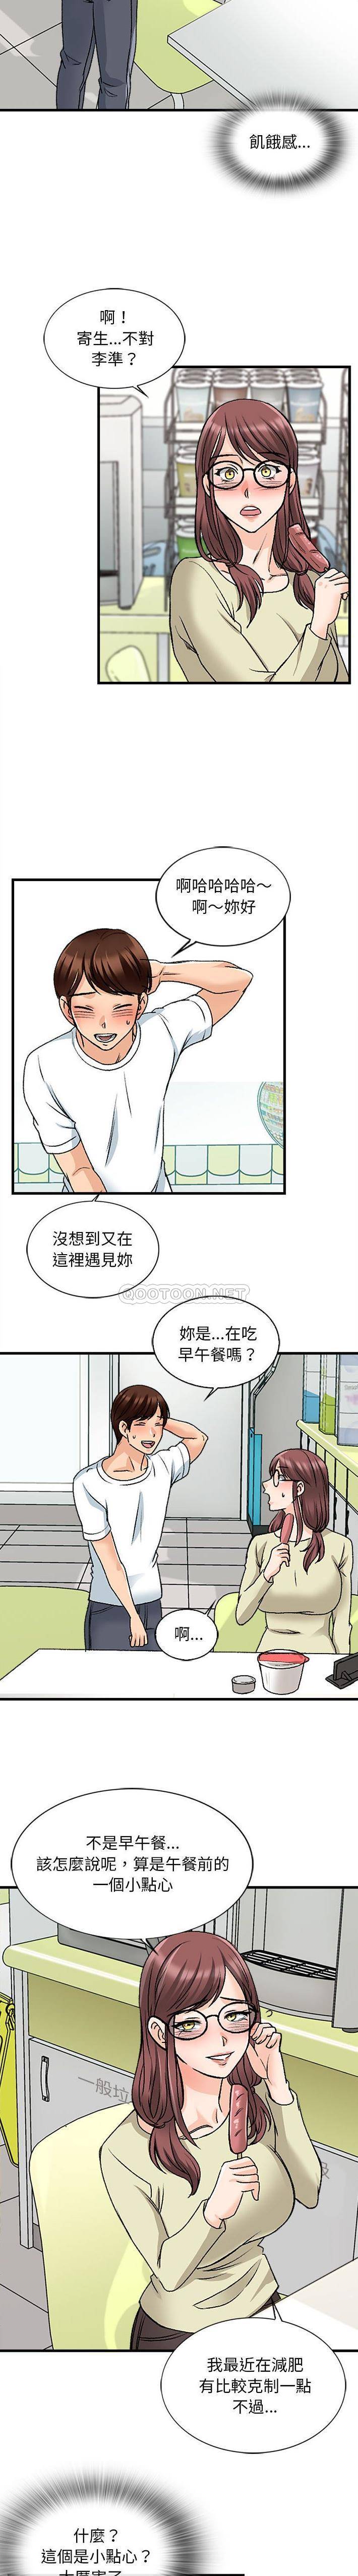 韩国污漫画 幸福公寓 第9话 11